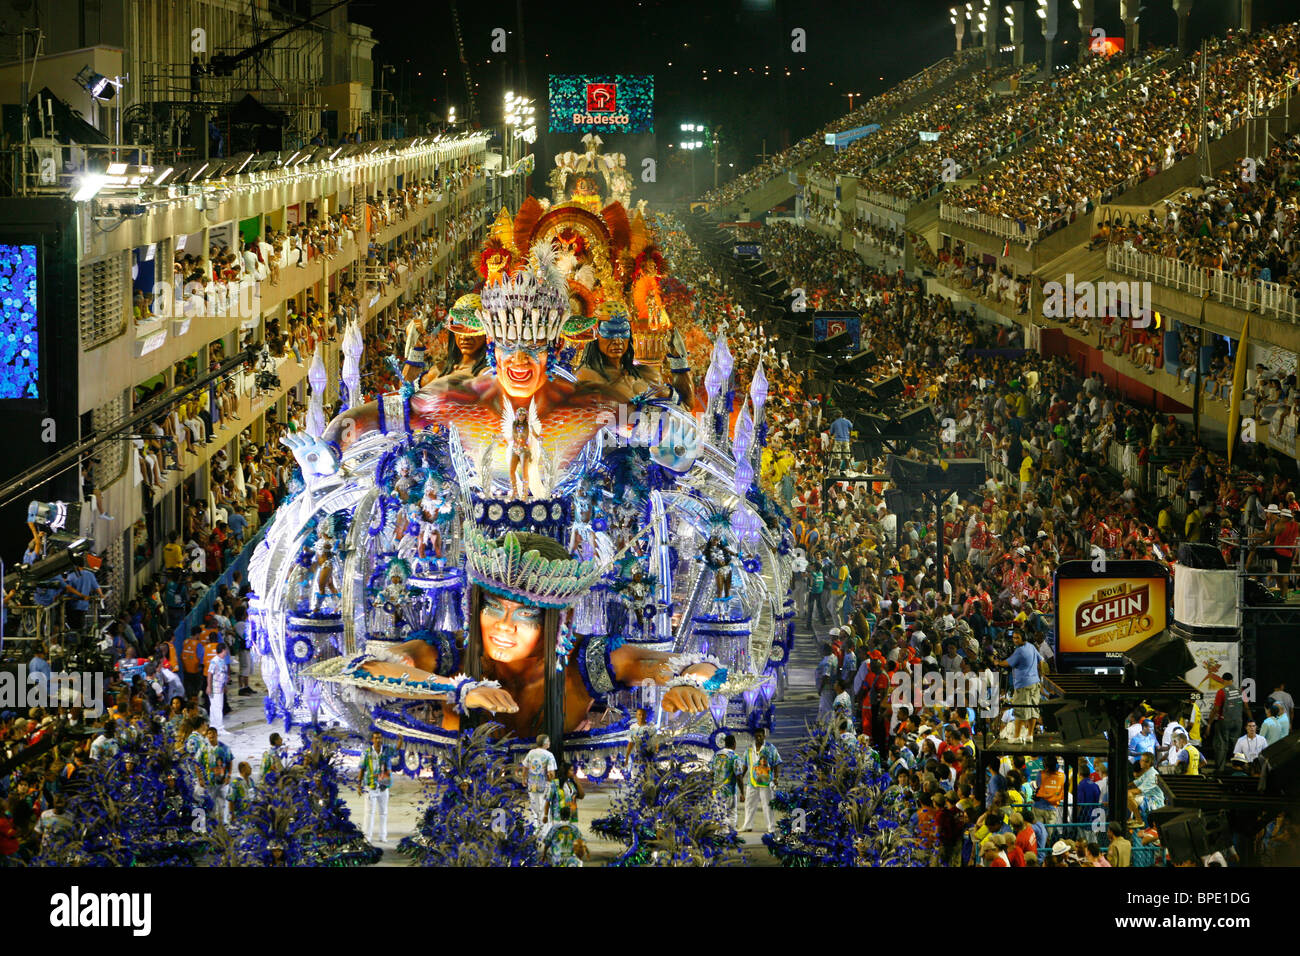 Sfilata di Carnevale al Sambodrome, 2010, Rio de Janeiro, Brasile. Foto Stock